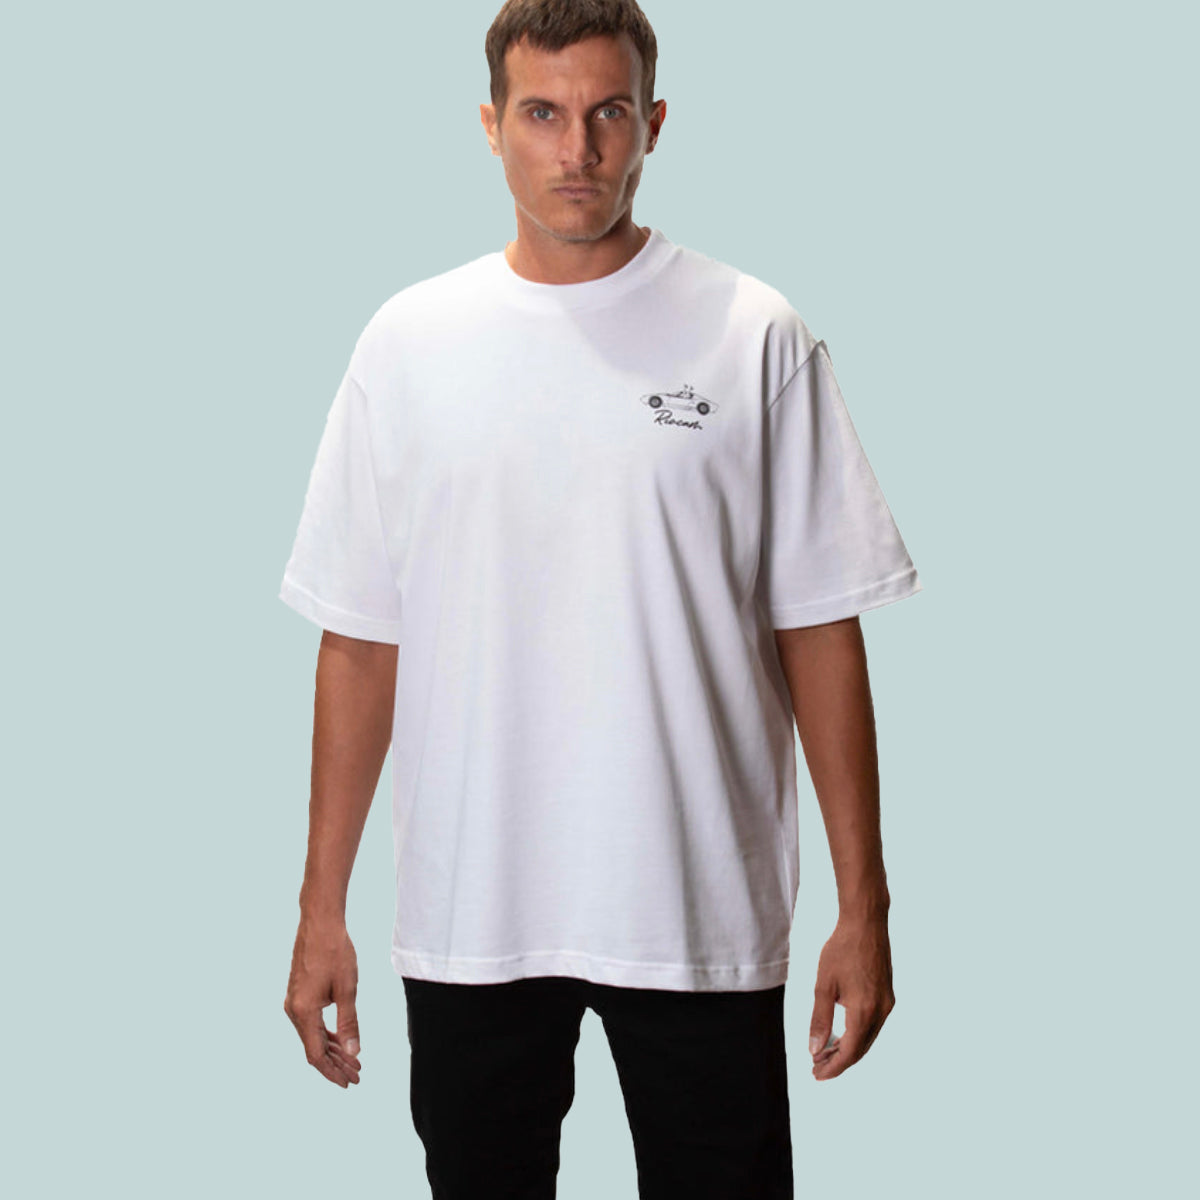 T-Shirt Riocam Team White